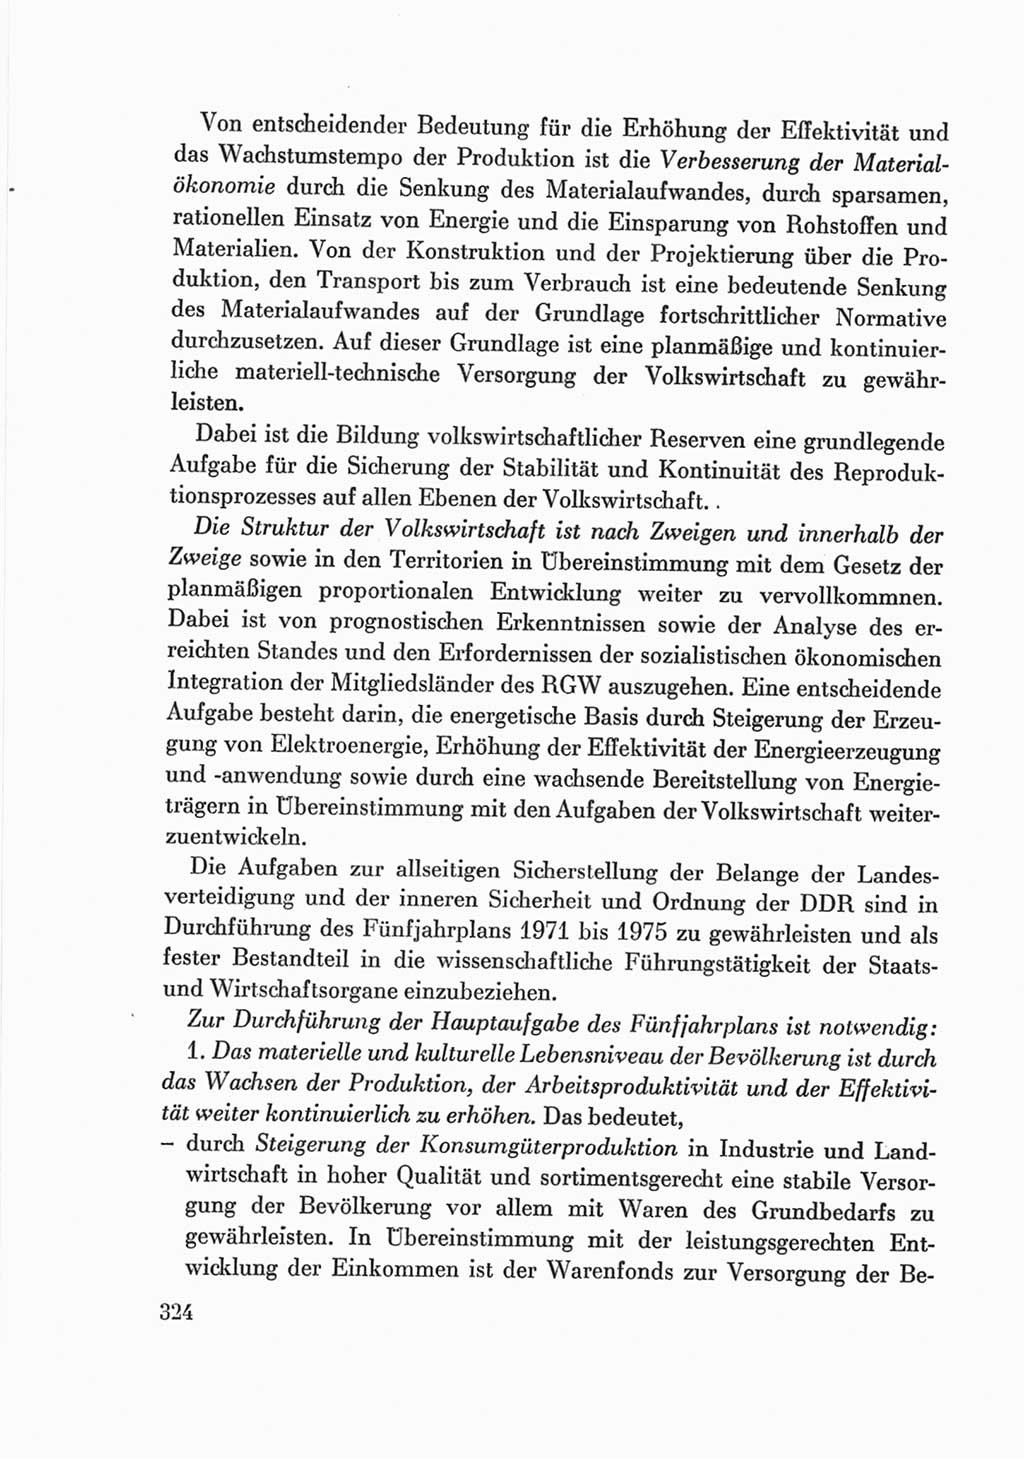 Protokoll der Verhandlungen des Ⅷ. Parteitages der Sozialistischen Einheitspartei Deutschlands (SED) [Deutsche Demokratische Republik (DDR)] 1971, Band 2, Seite 324 (Prot. Verh. Ⅷ. PT SED DDR 1971, Bd. 2, S. 324)